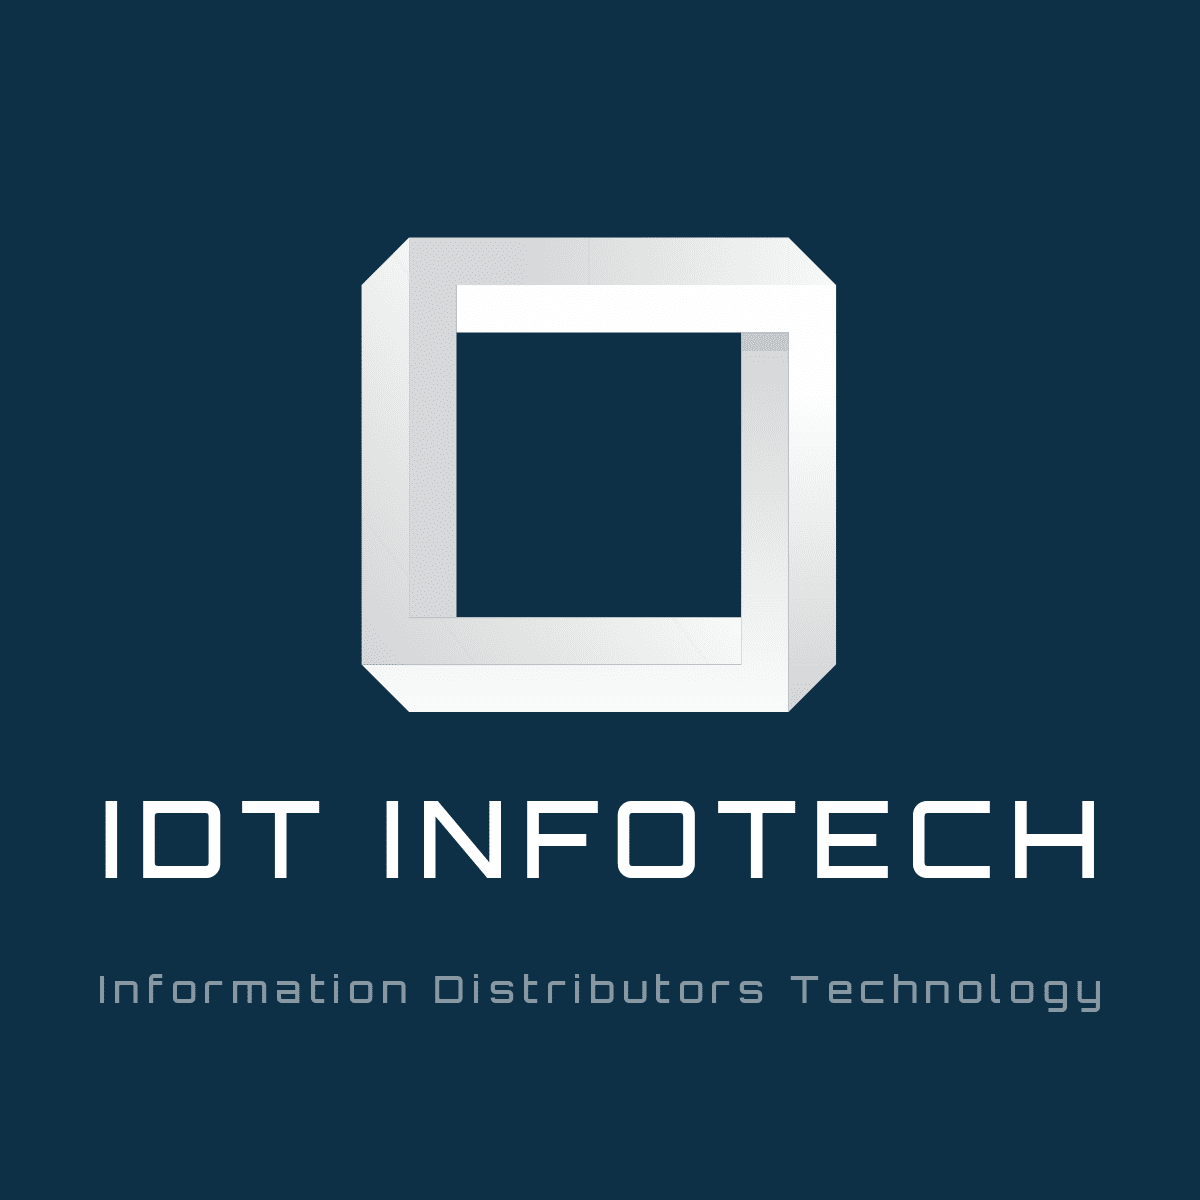 iDt Infotech